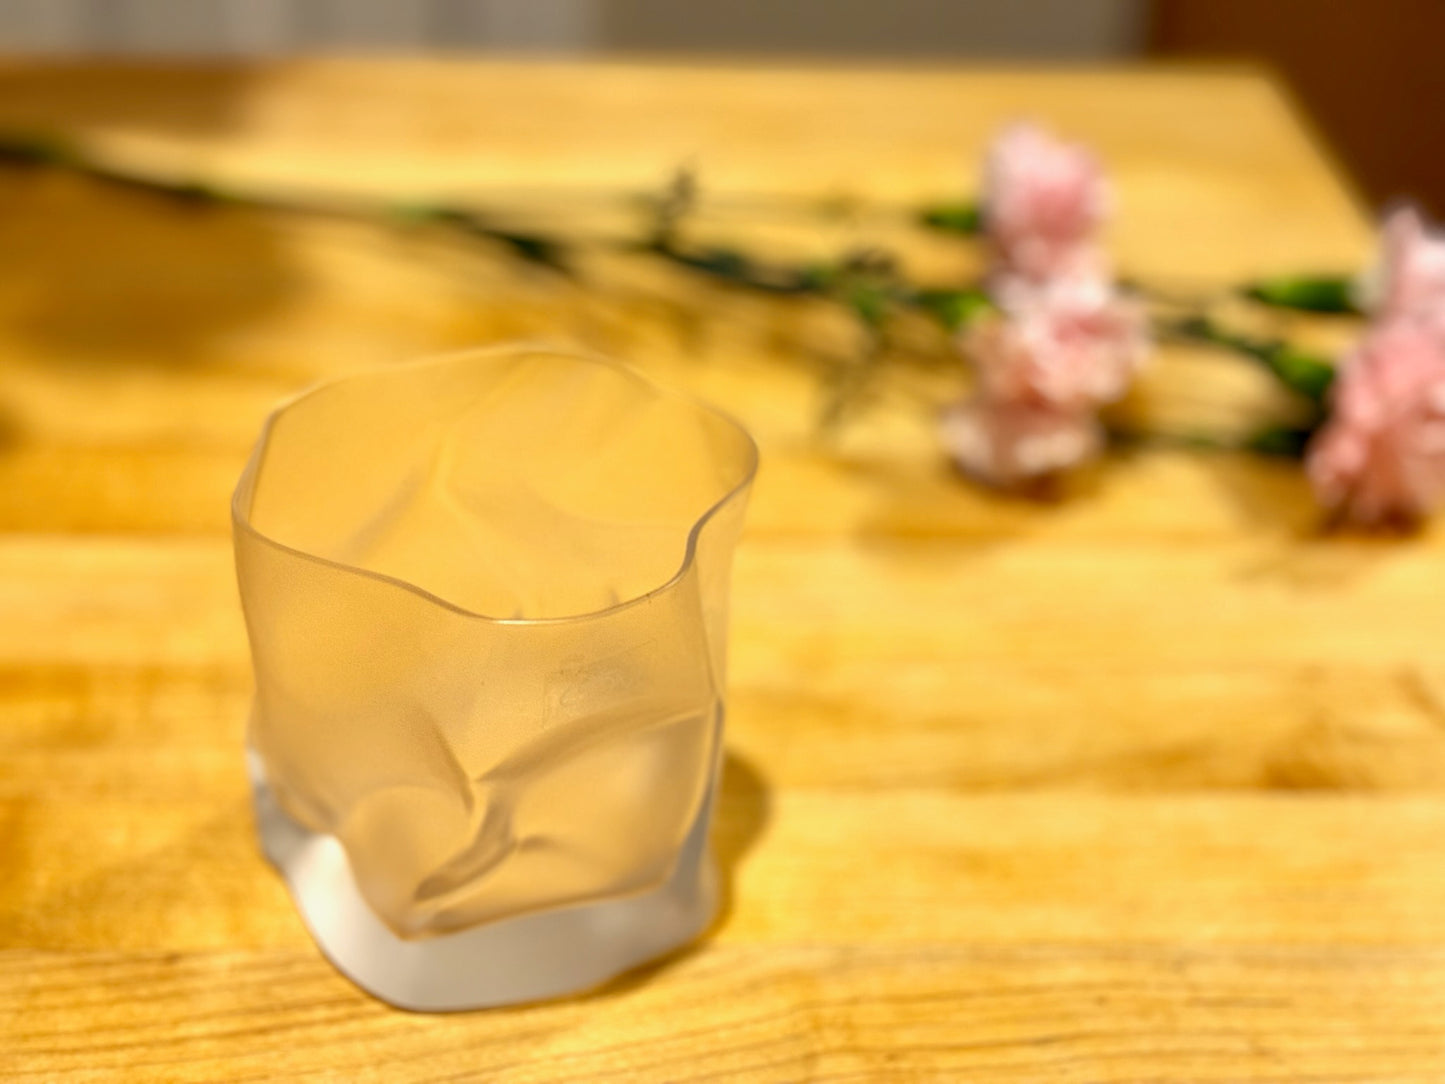 Crumple Old Fashioned Whiskey Glass by Komatsu Makoto